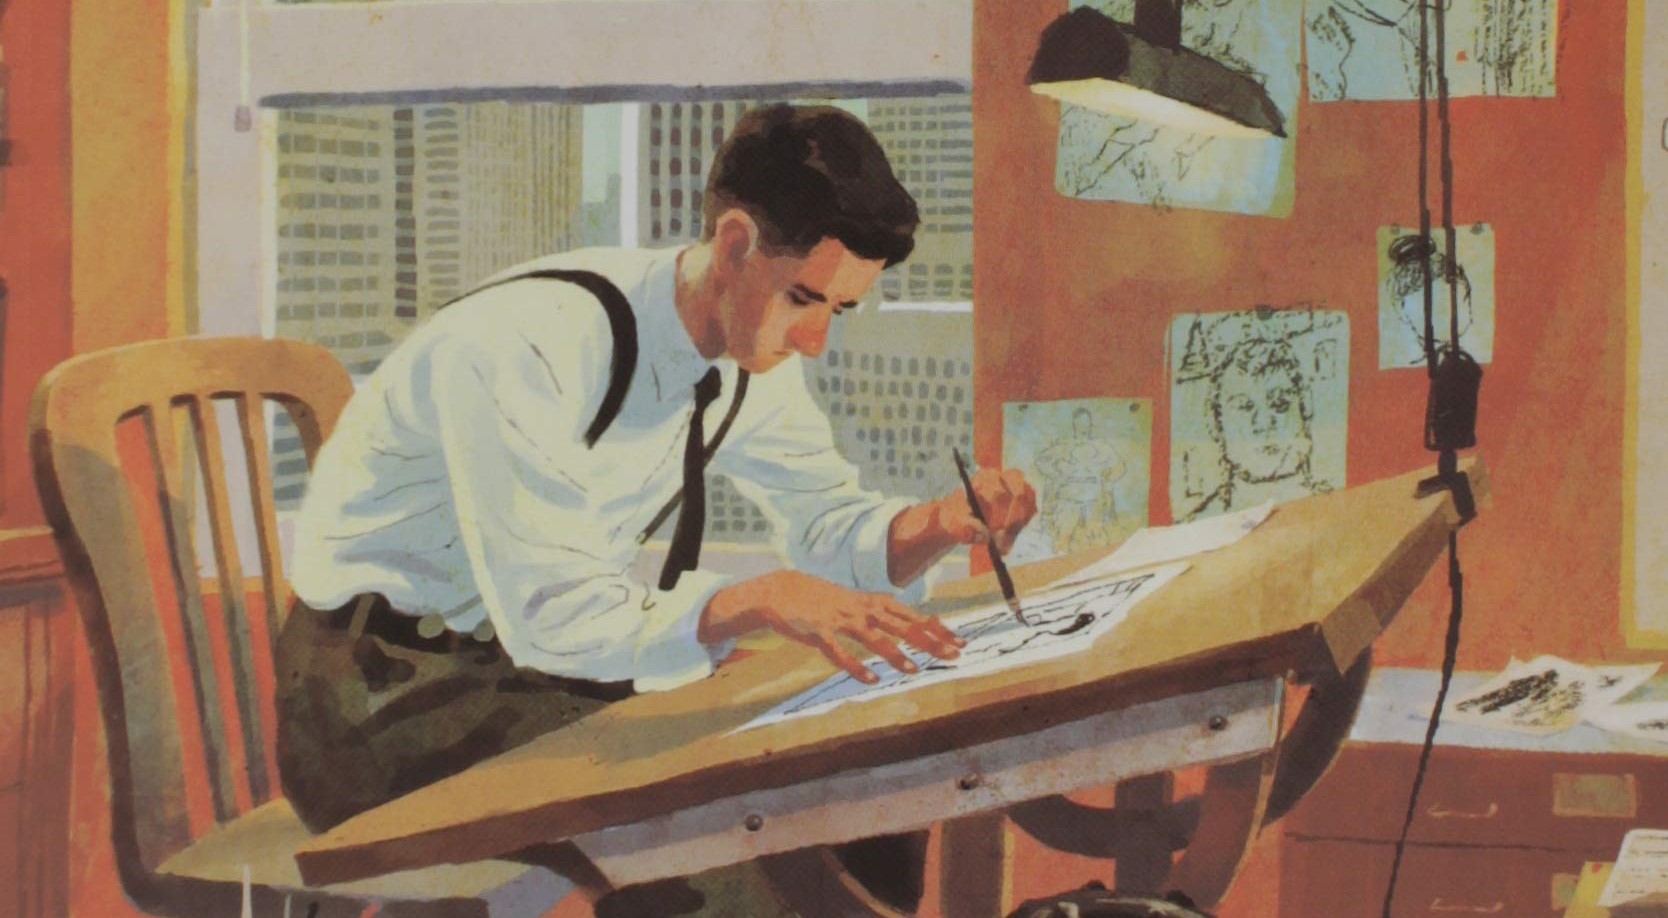 Análise | A história de Joe Shuster, o artista por trás do Superman